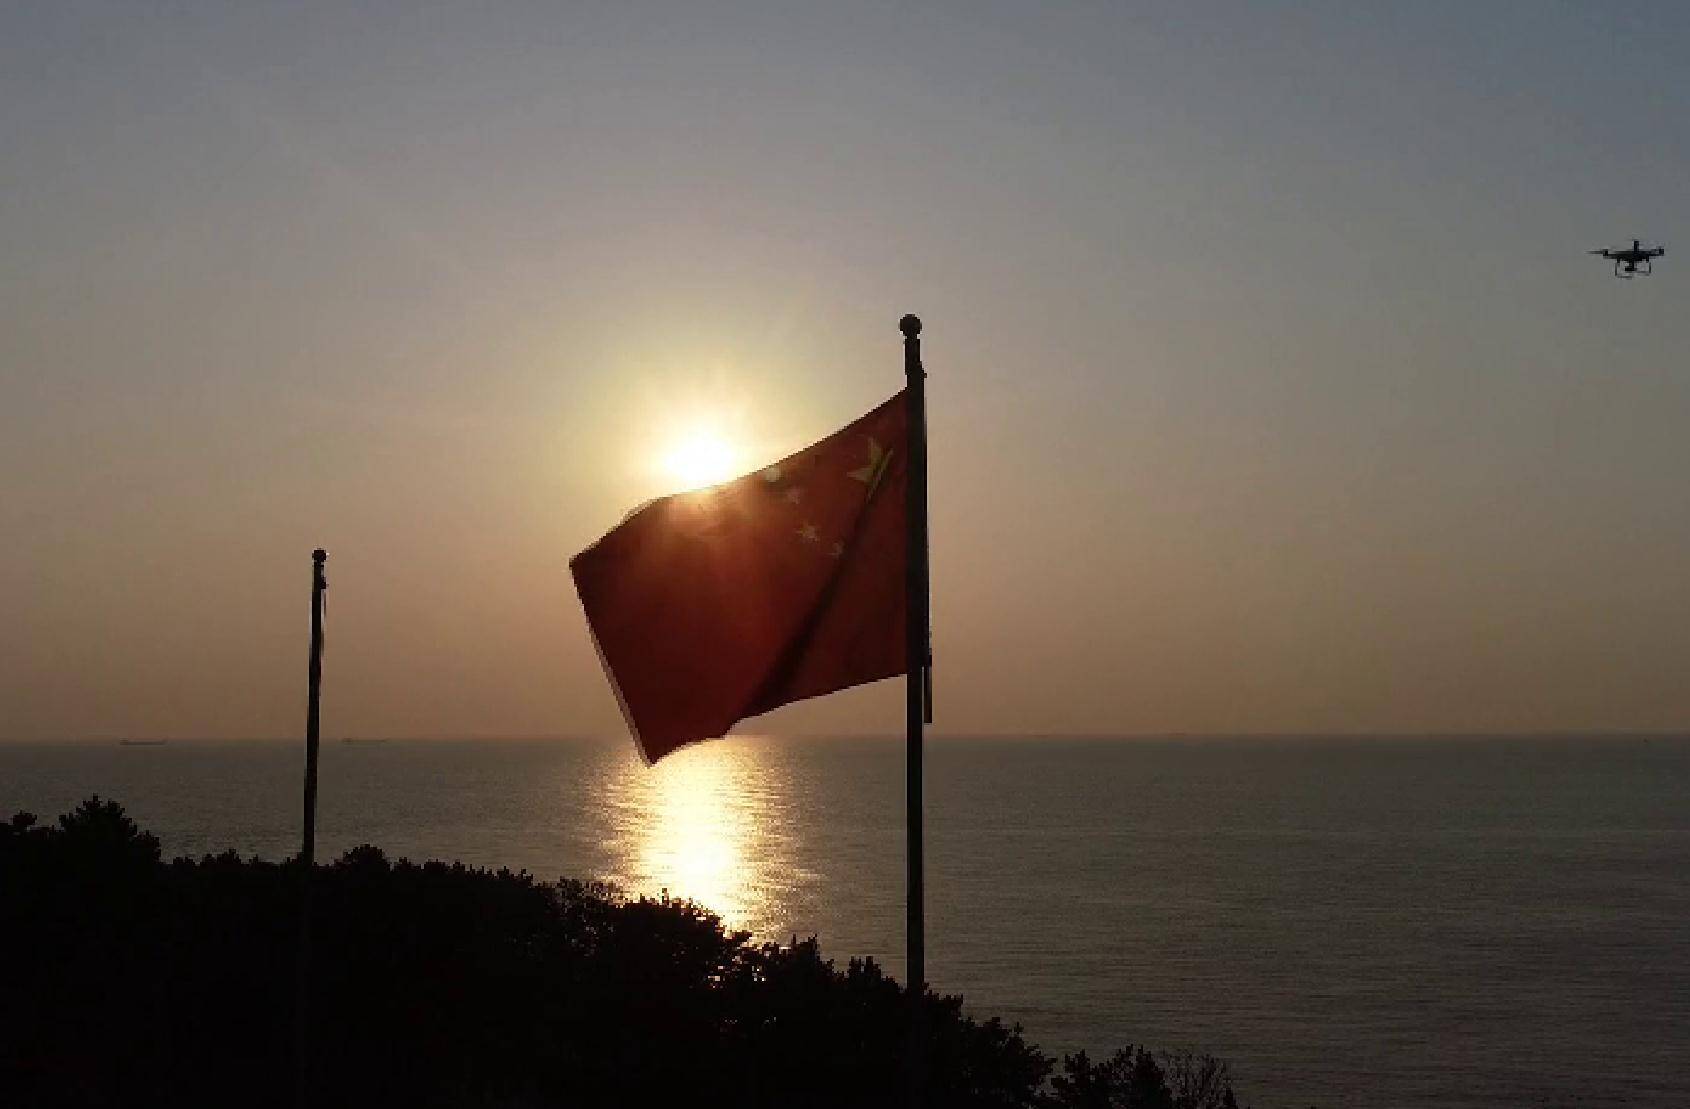 伴随着庄严的国歌 烟台荣成成山头迎接中国海岸新年第一缕阳光